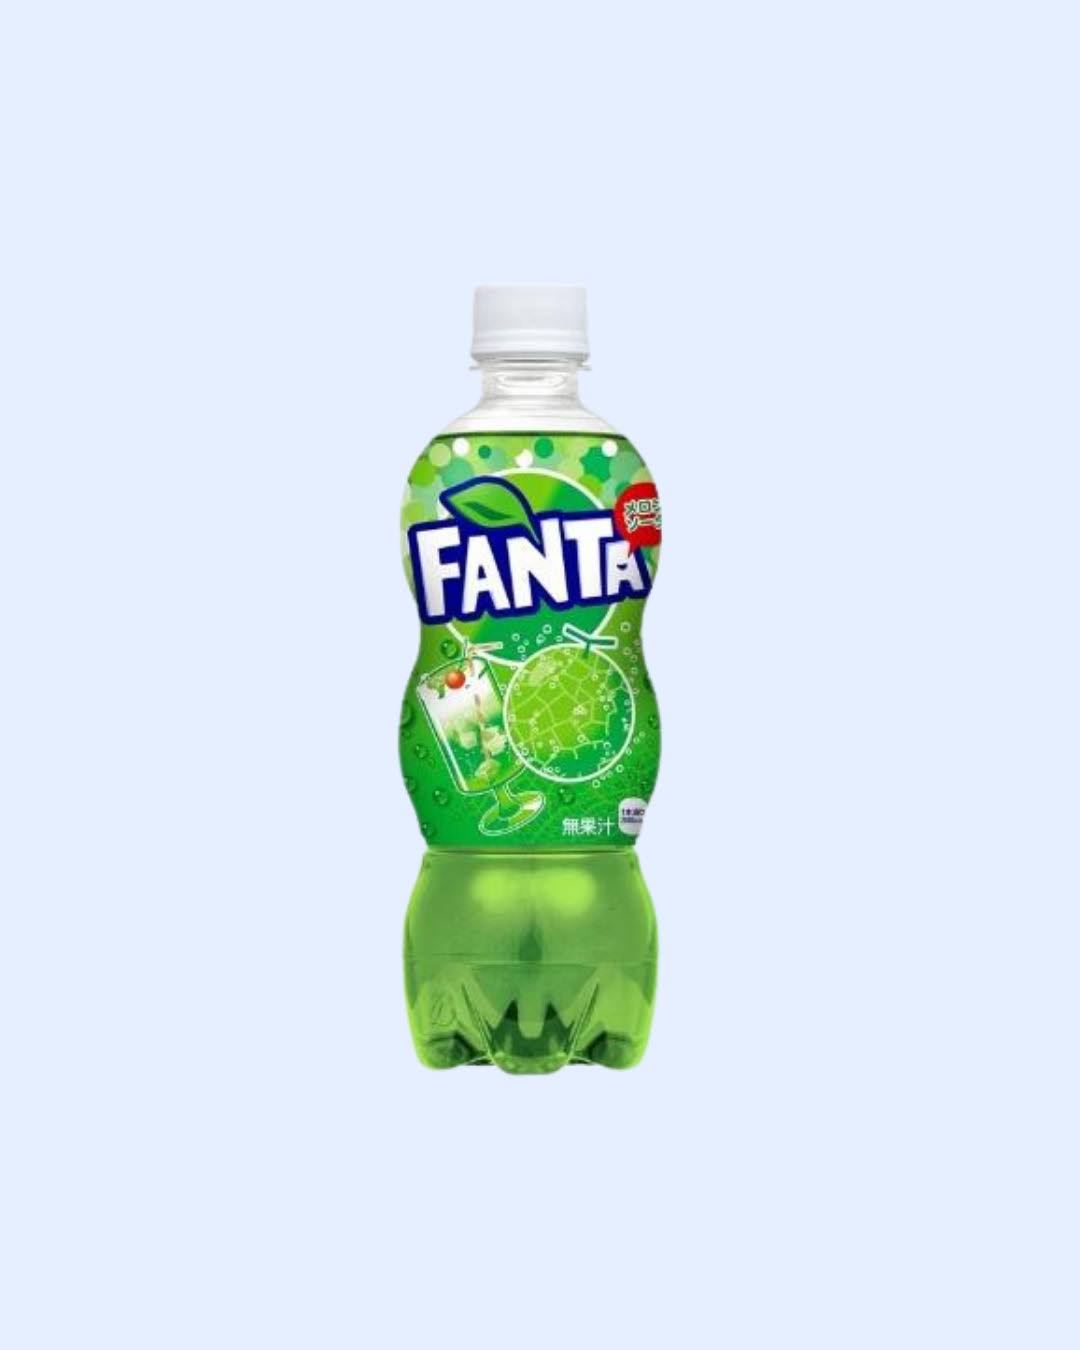 Fanta Melon Soda